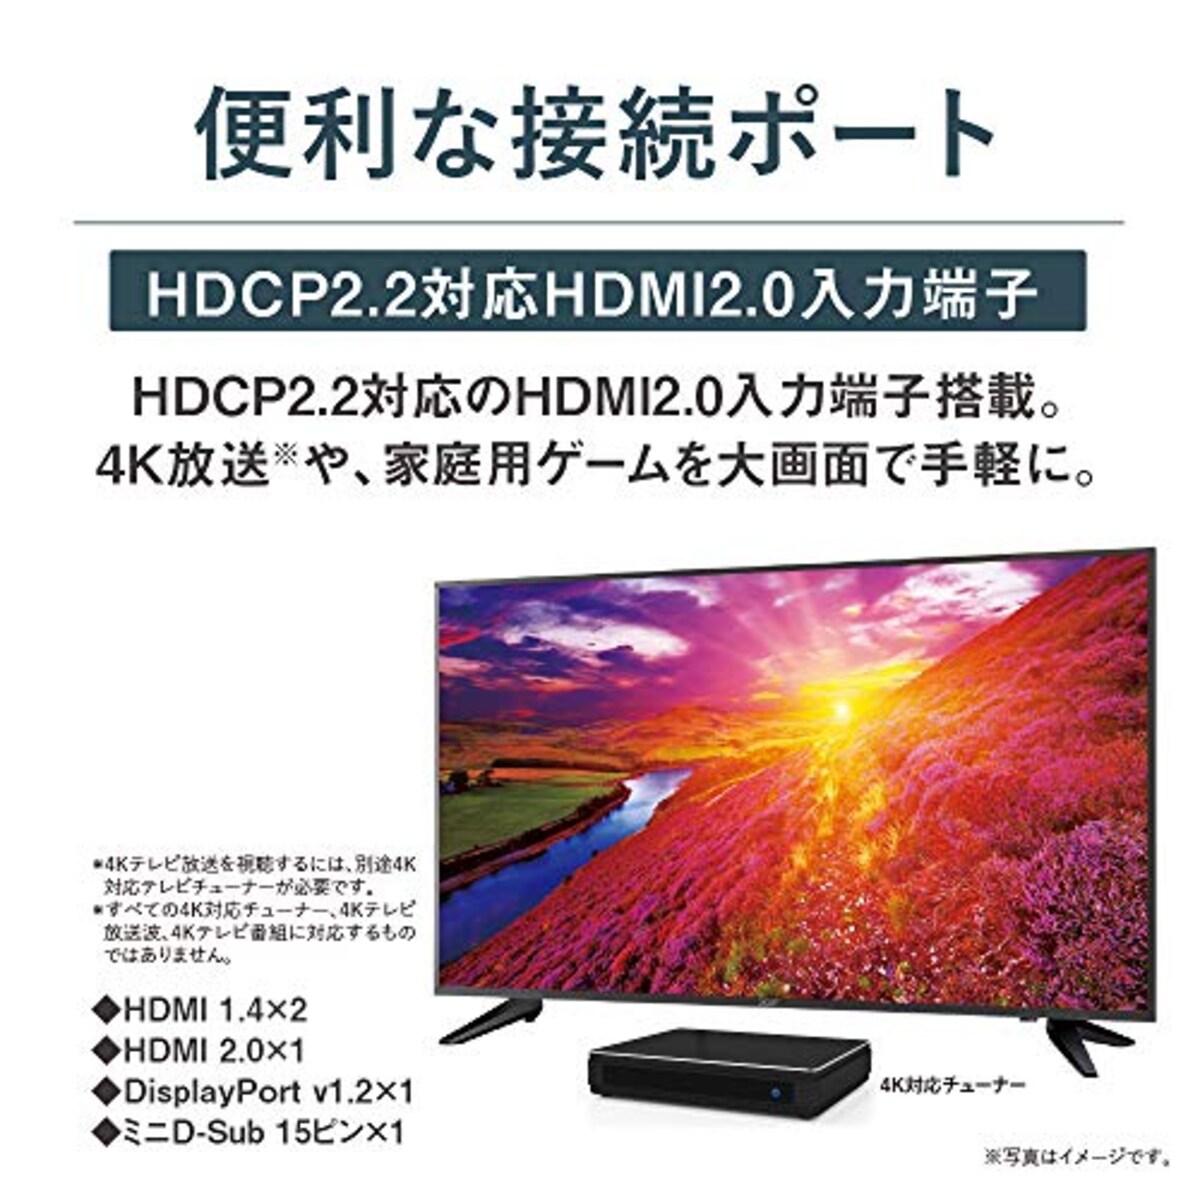  Acer モニター OmegaLine DM431Kbmiiipfx 43インチ IPS 半光沢 4K 75Hz 5ms HDMIx3 DisplayPort HDR VESAマウント対応PIP/PBP機能 スピーカー内蔵 リモコン付 フリッカーレス ブルーライト軽減 フレームレスデザイン画像3 